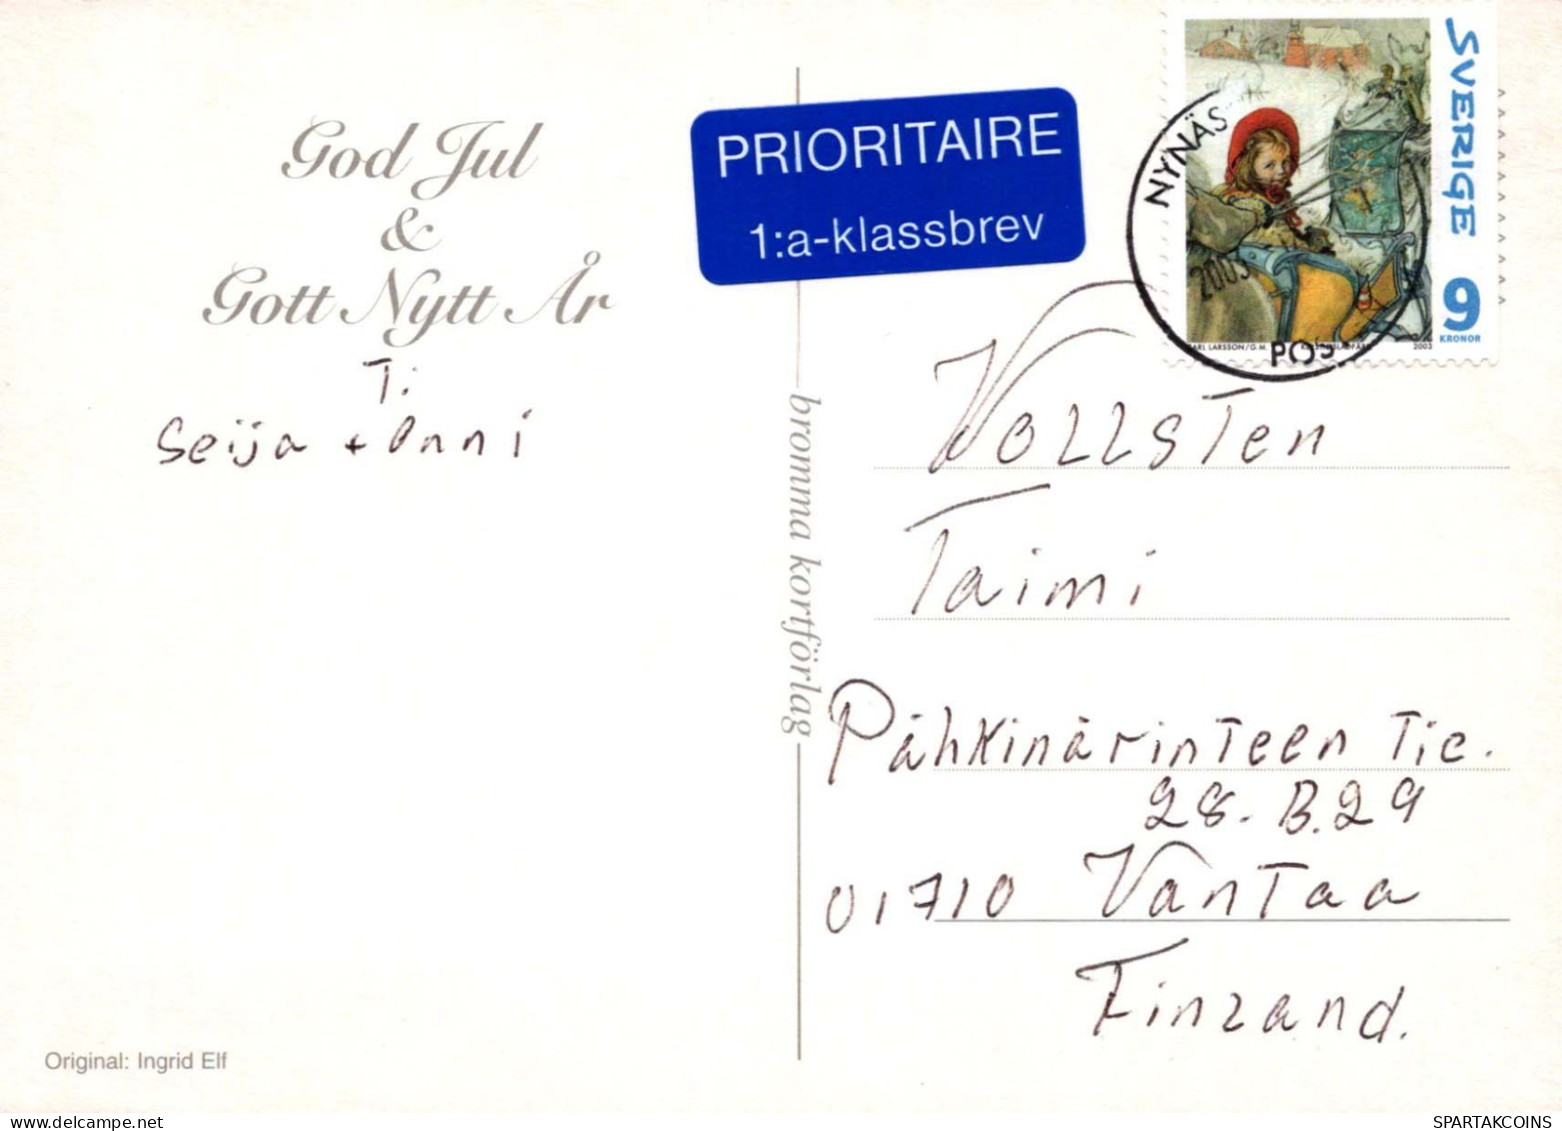 PÈRE NOËL Bonne Année Noël GNOME Vintage Carte Postale CPSM #PBL791.A - Santa Claus